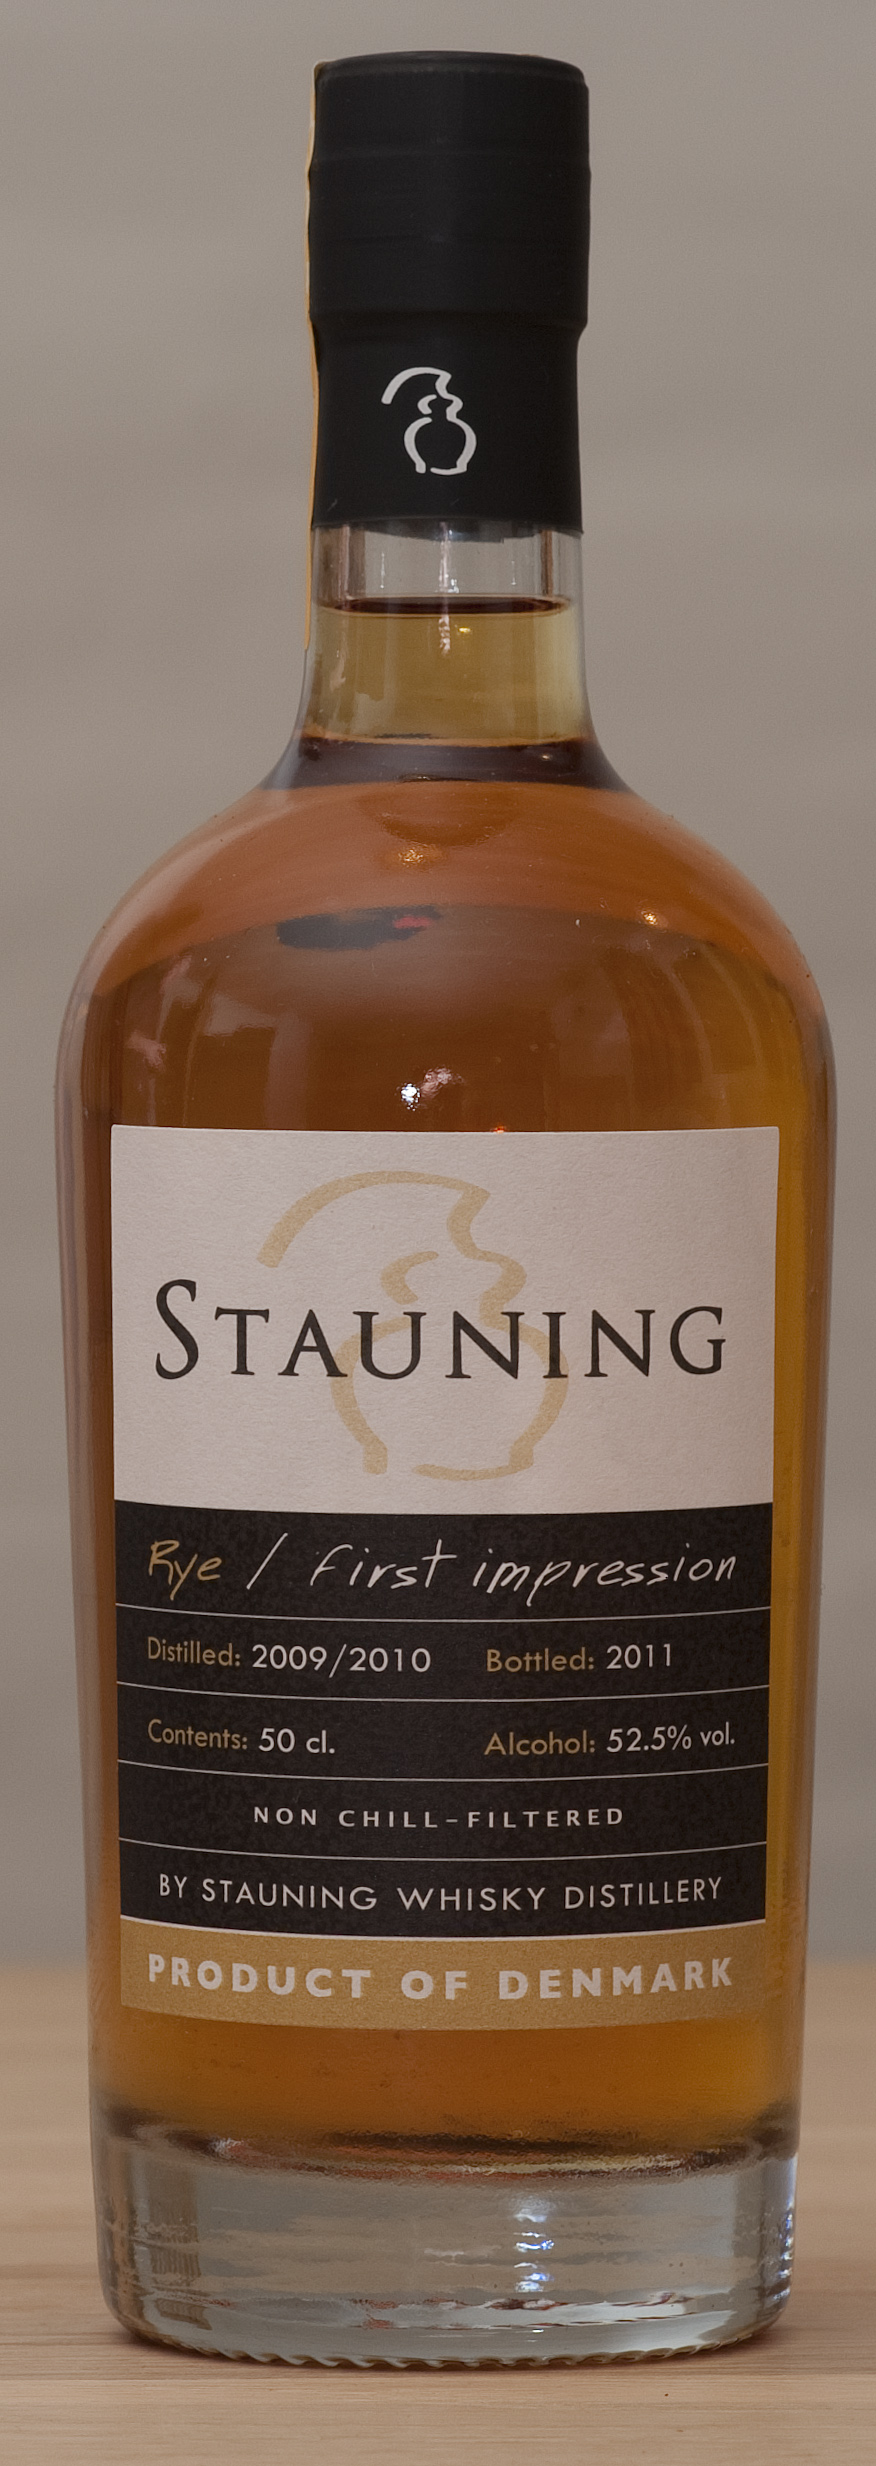 Billede: stauning rye first impression.jpg